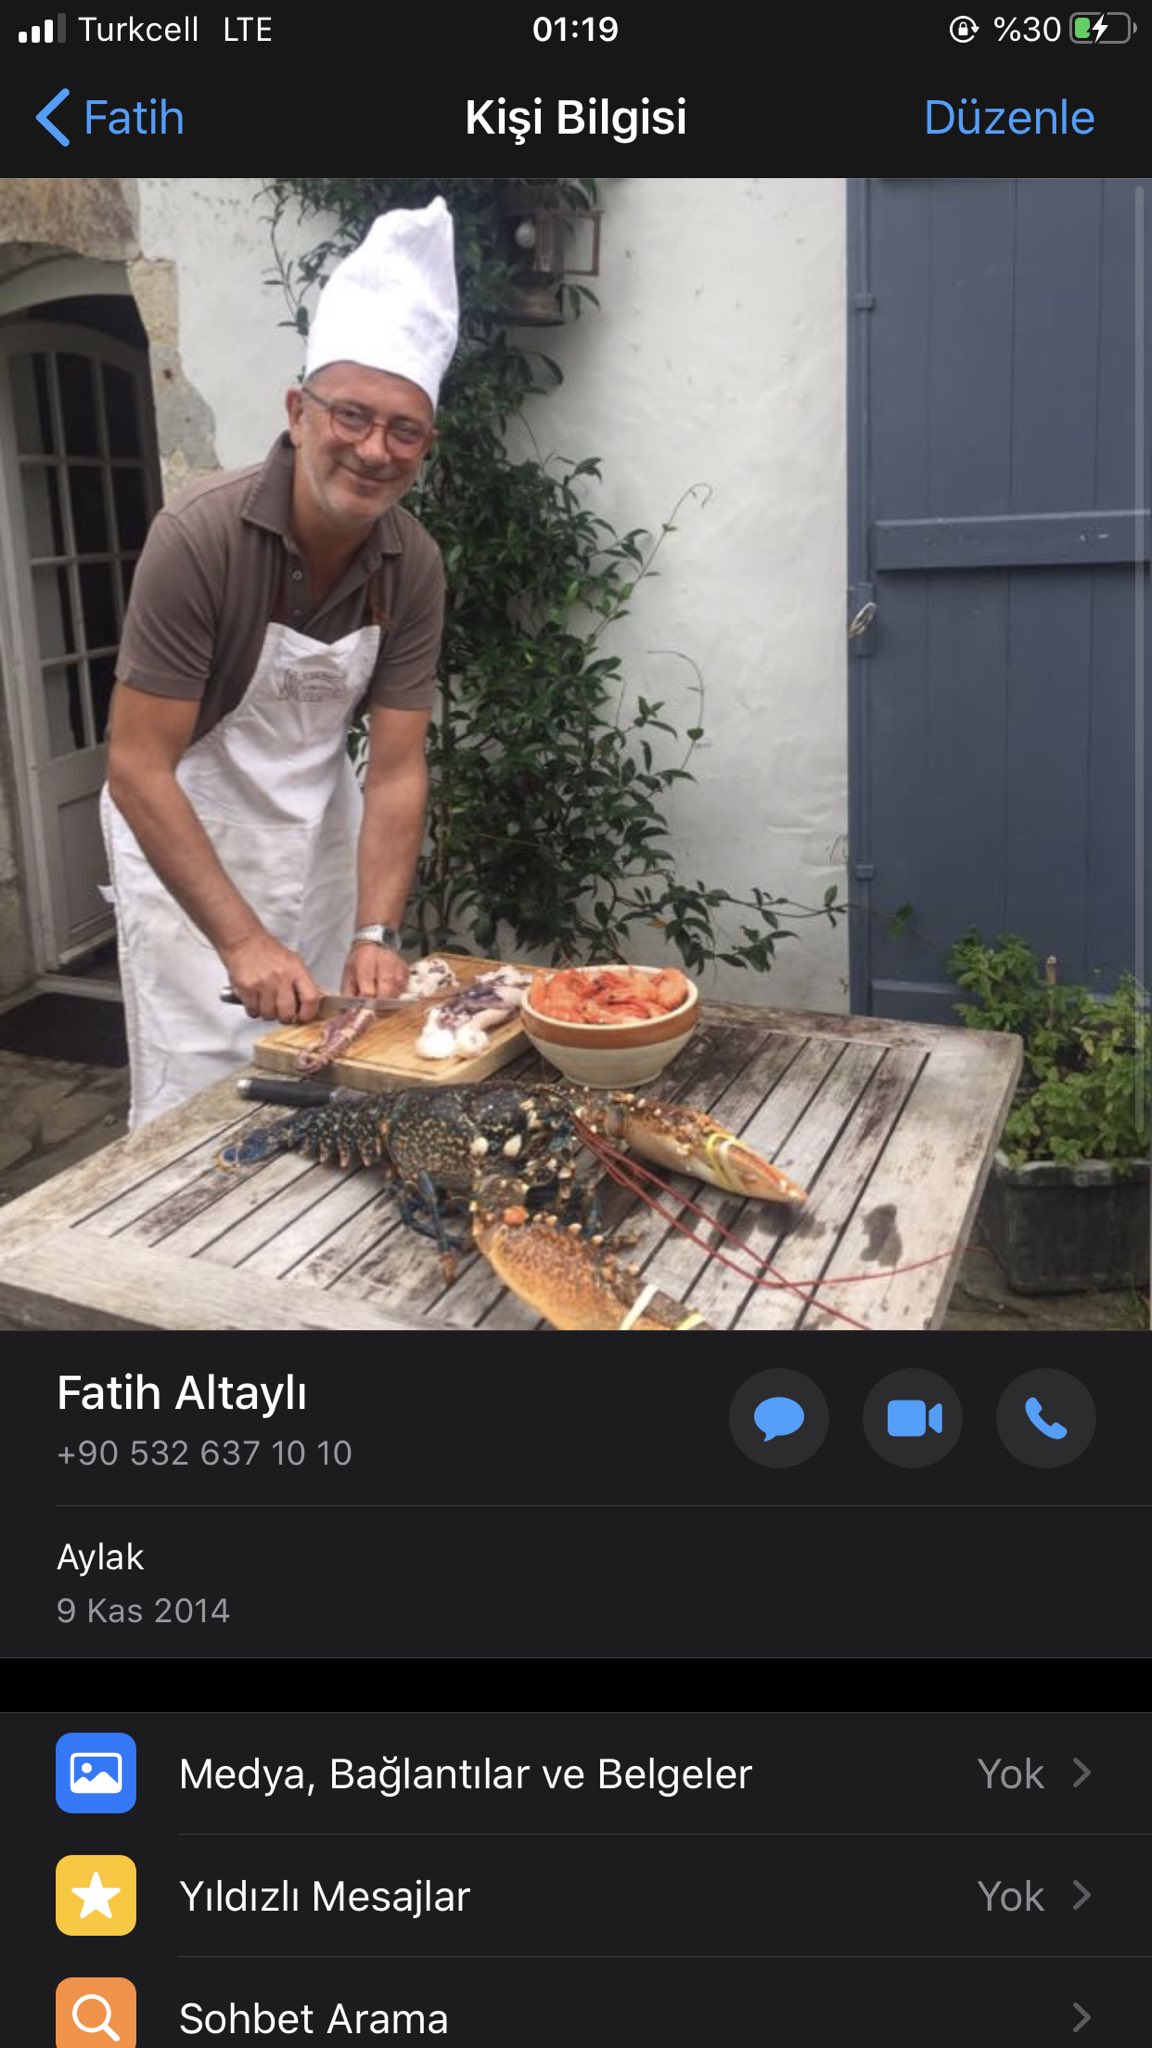 Ercan Taner, Fatih Altaylı'nın numarasını paylaştı